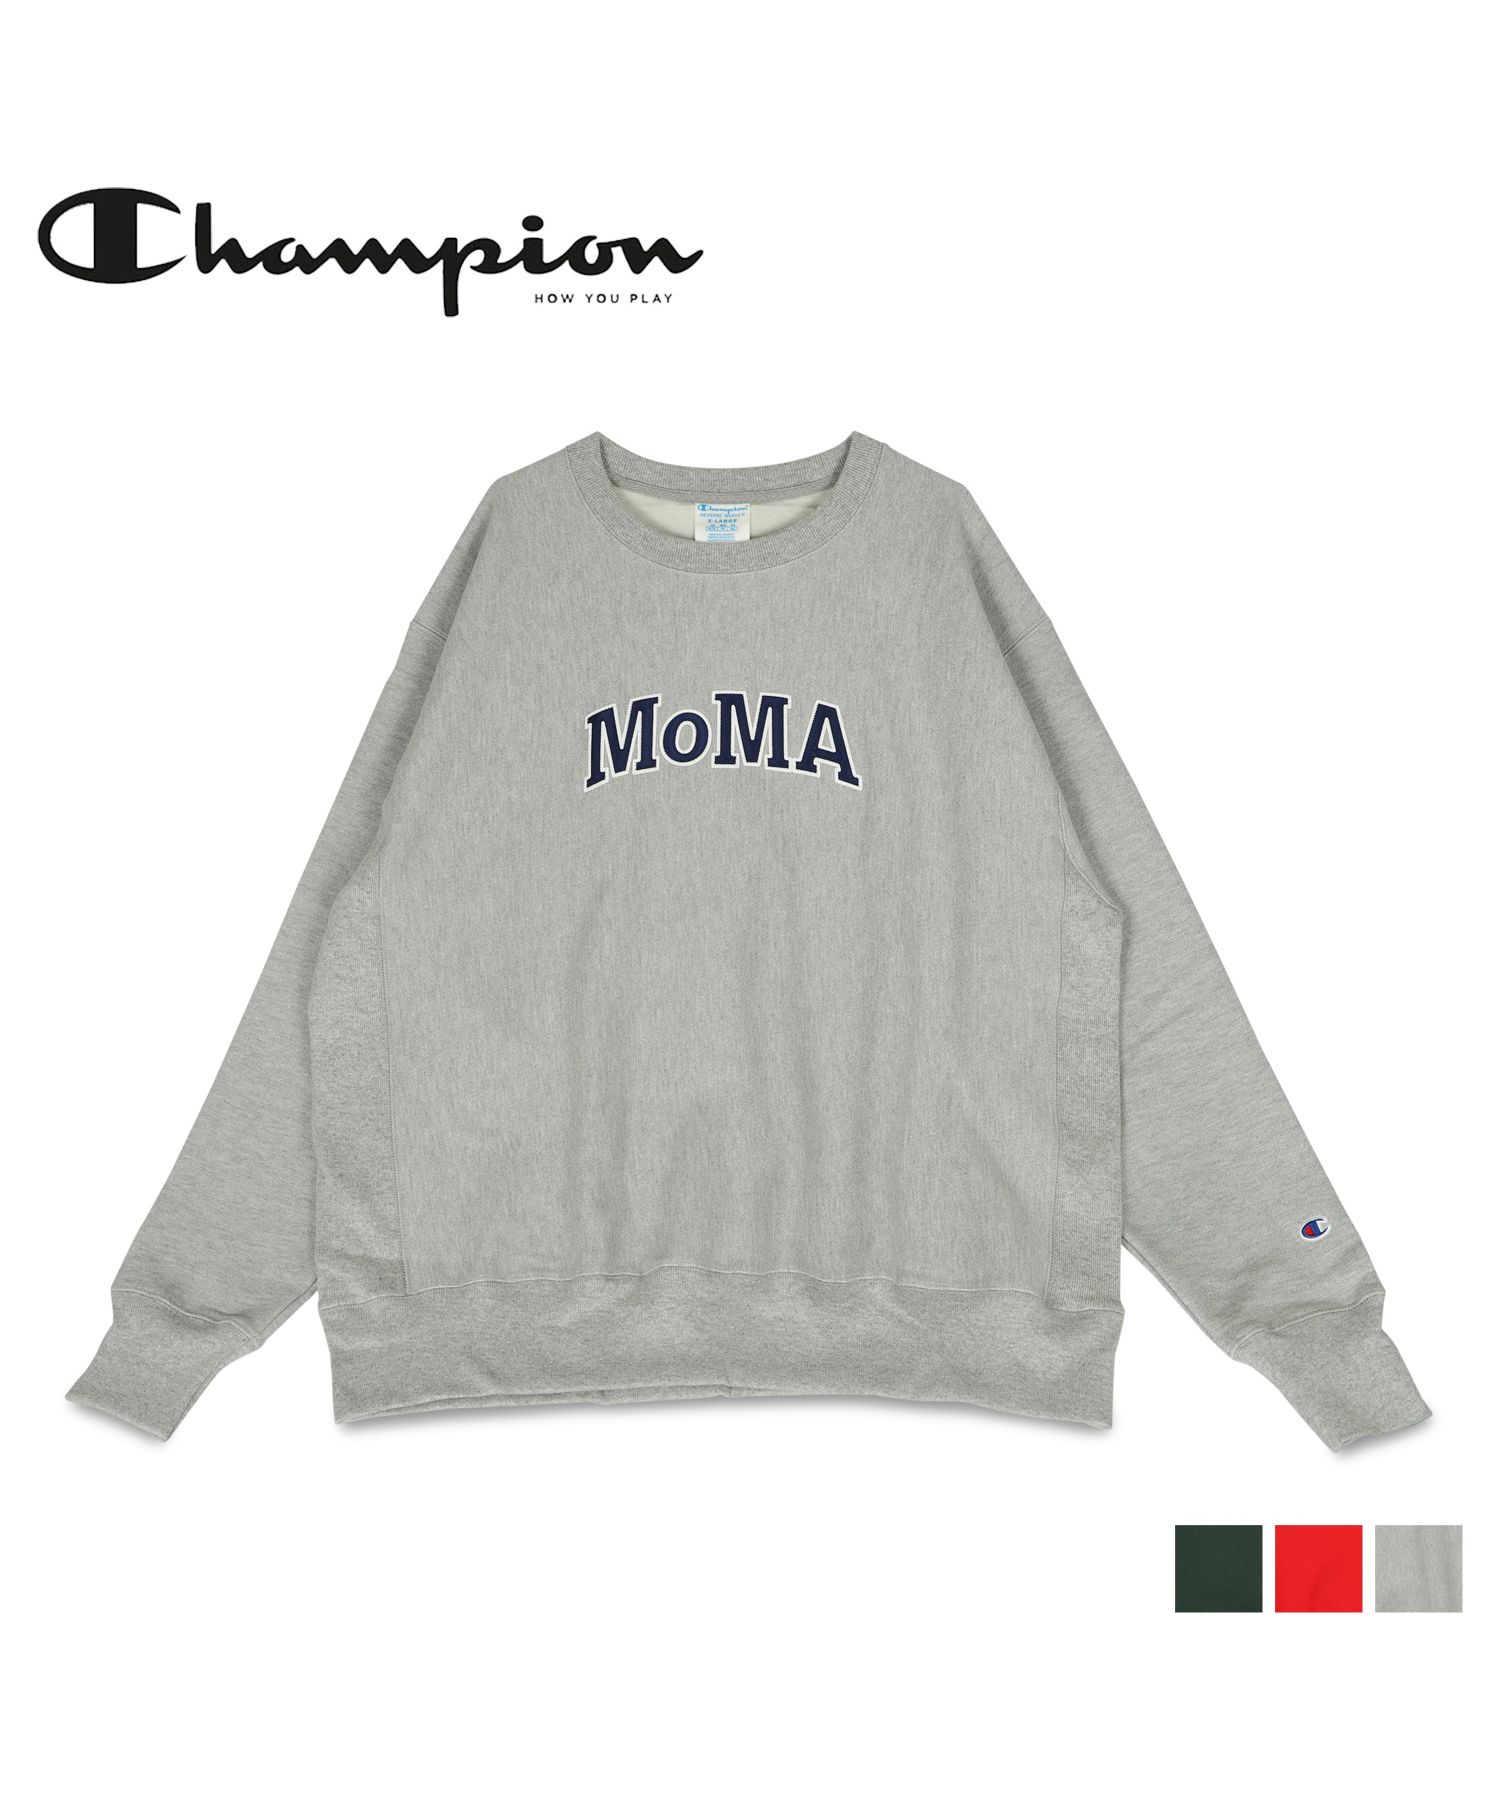 セール】チャンピオン モマ Champion MoMA スウェット トレーナー